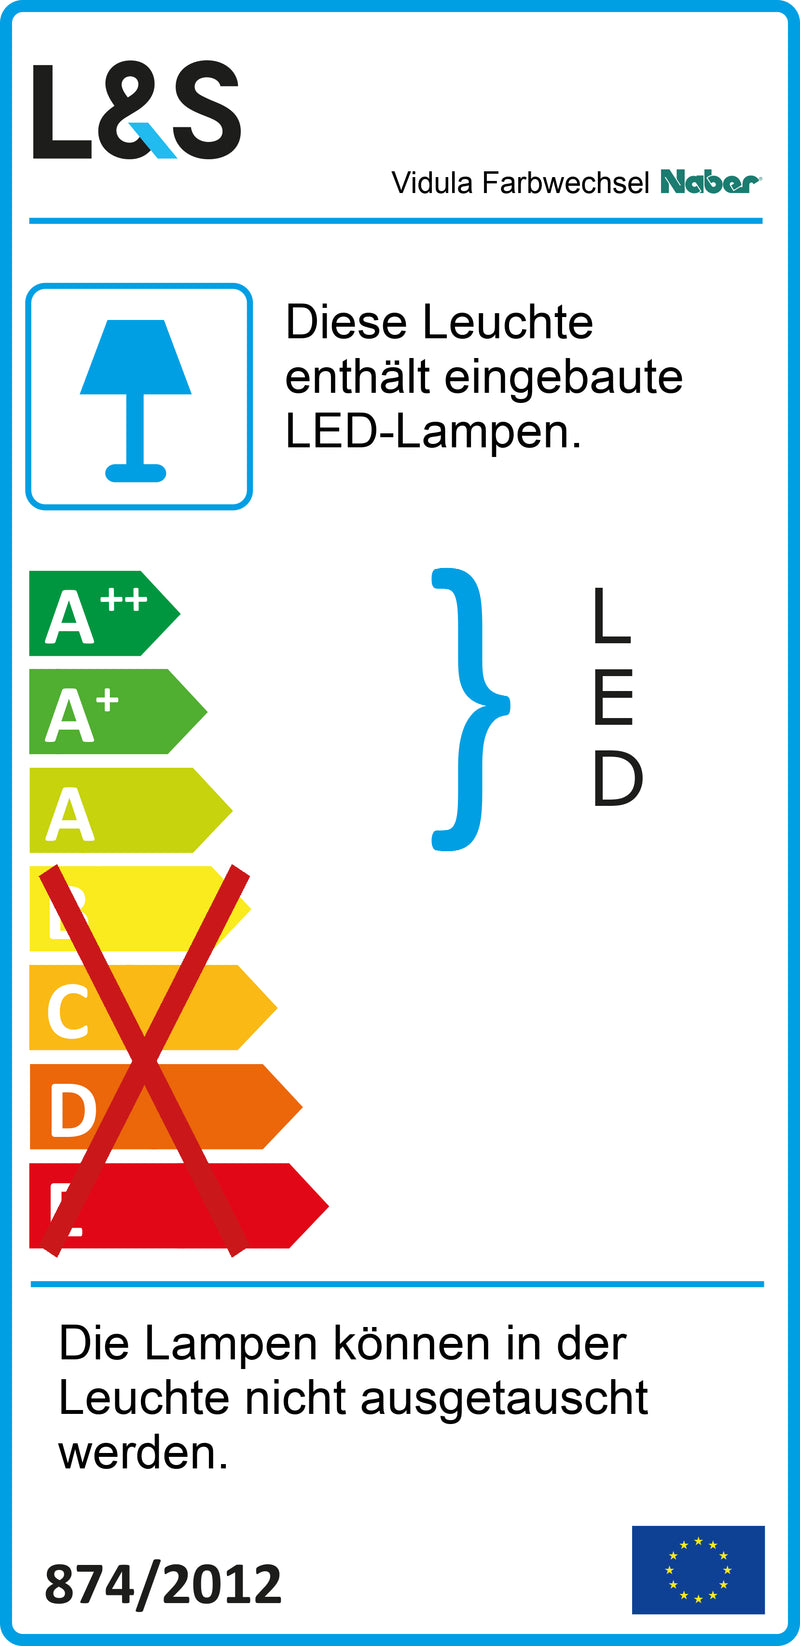 E-Label zu Zeichnung zu Vidula Farbwechsel LED als Variante L 600 mm, schwarz matt von Naber GmbH in der Kategorie Lichttechnik in Österreich auf conceptshop.at